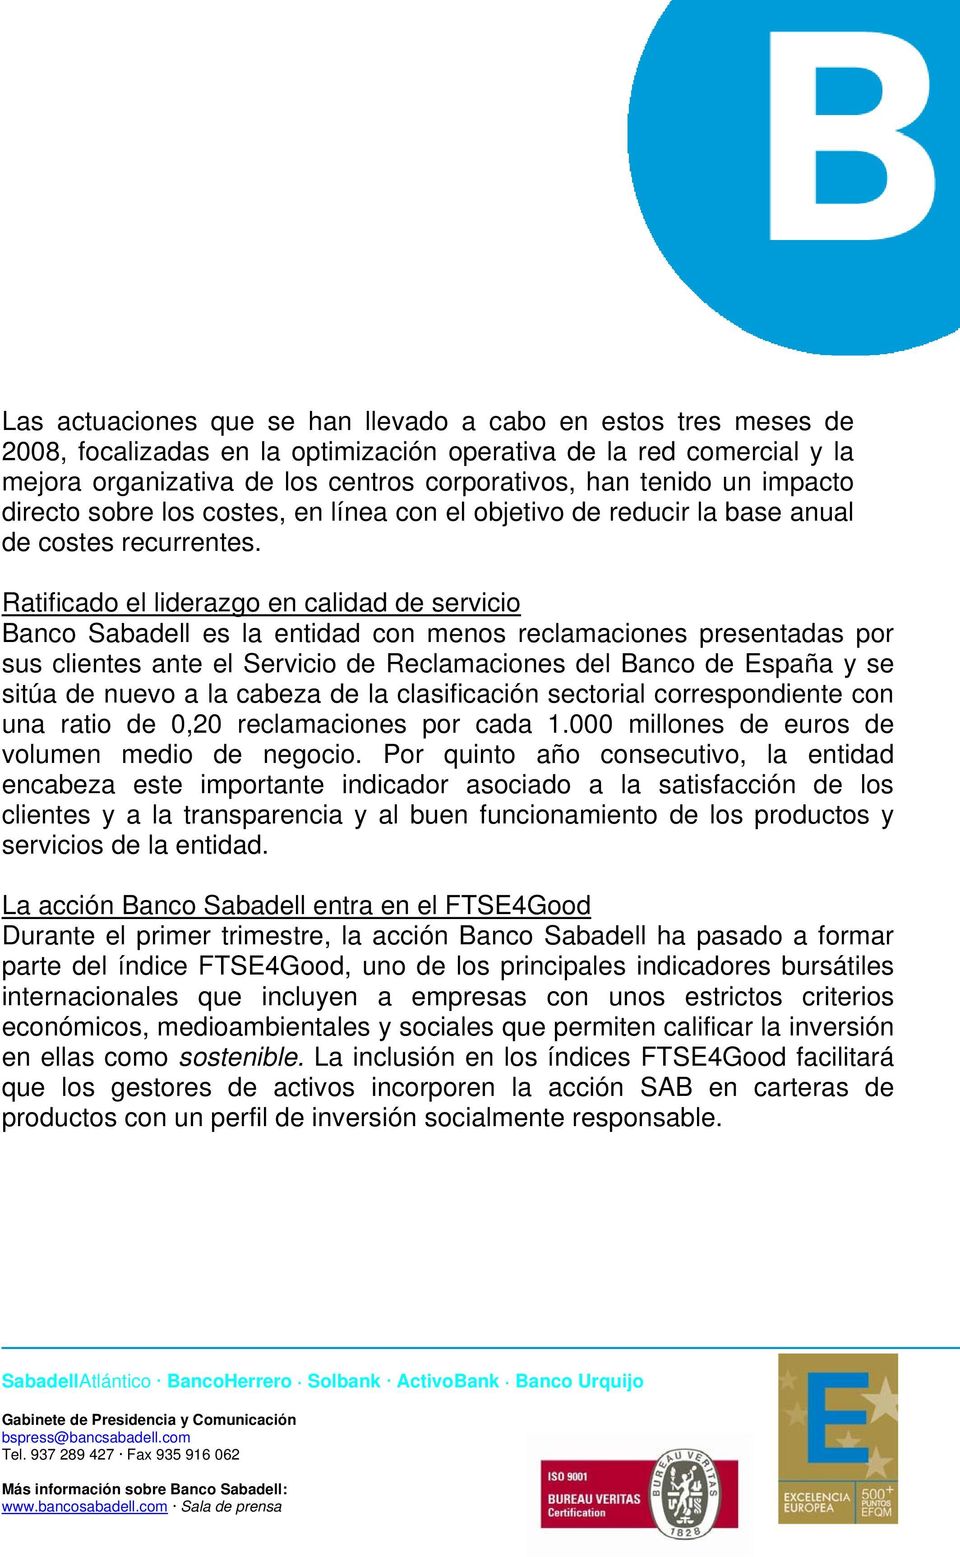 Ratificado el liderazgo en calidad de servicio Banco Sabadell es la entidad con menos reclamaciones presentadas por sus clientes ante el Servicio de Reclamaciones del Banco de España y se sitúa de